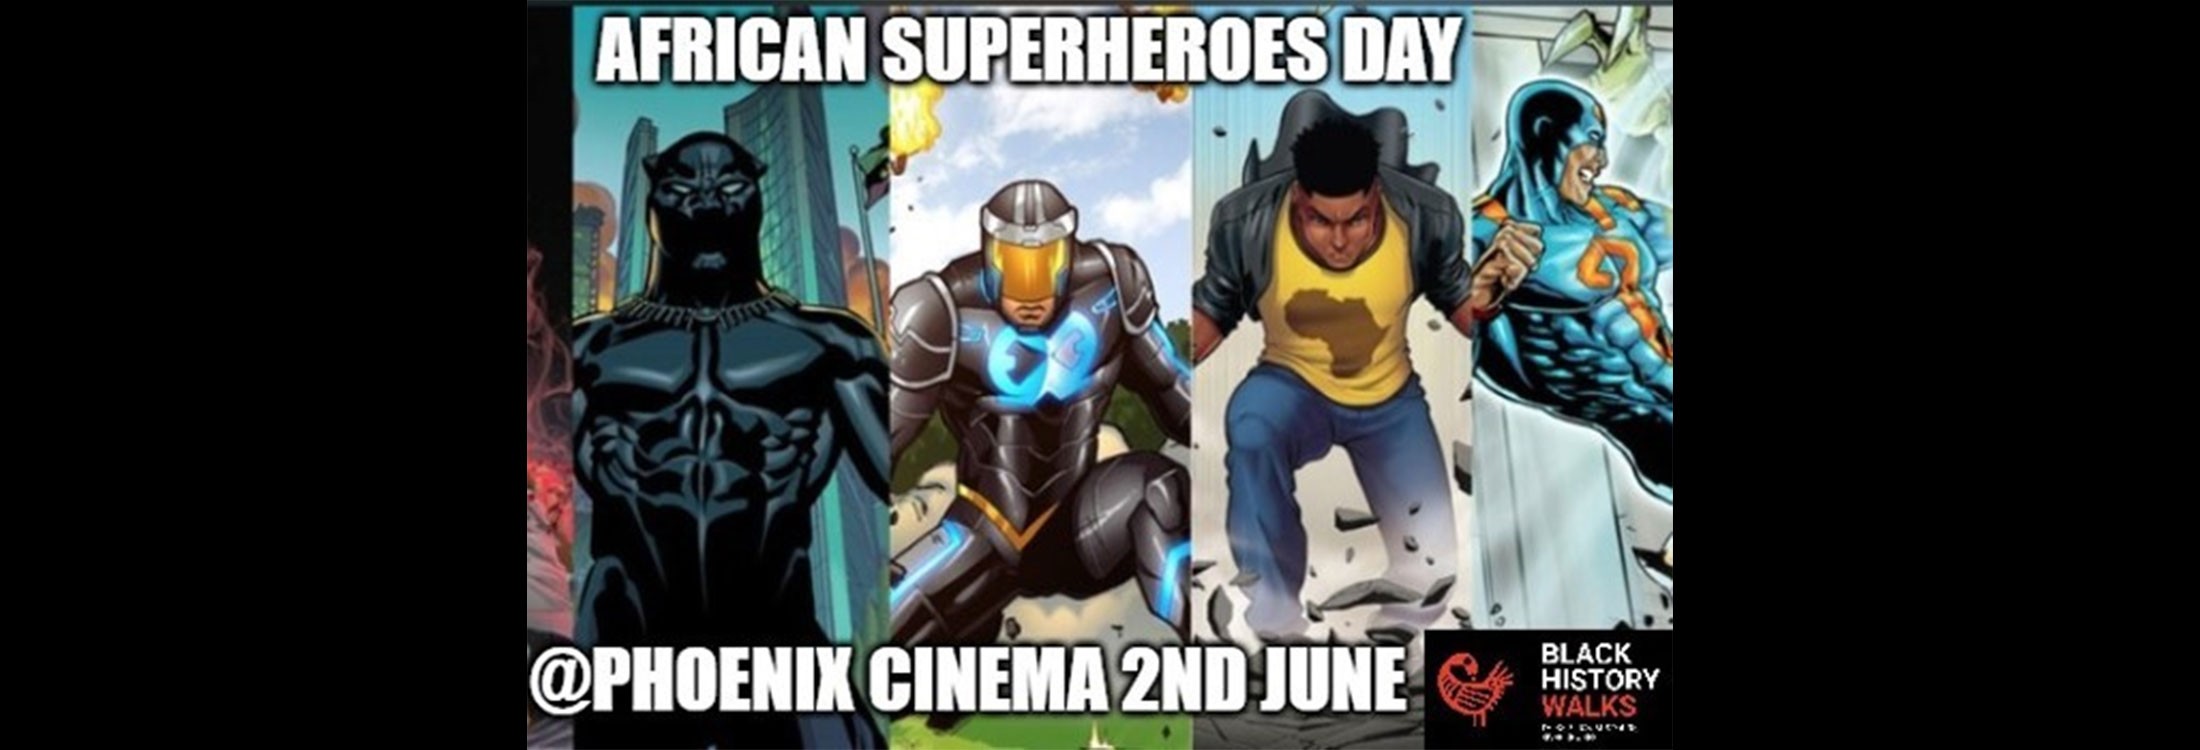 Black History Walks: African Superheroes Day